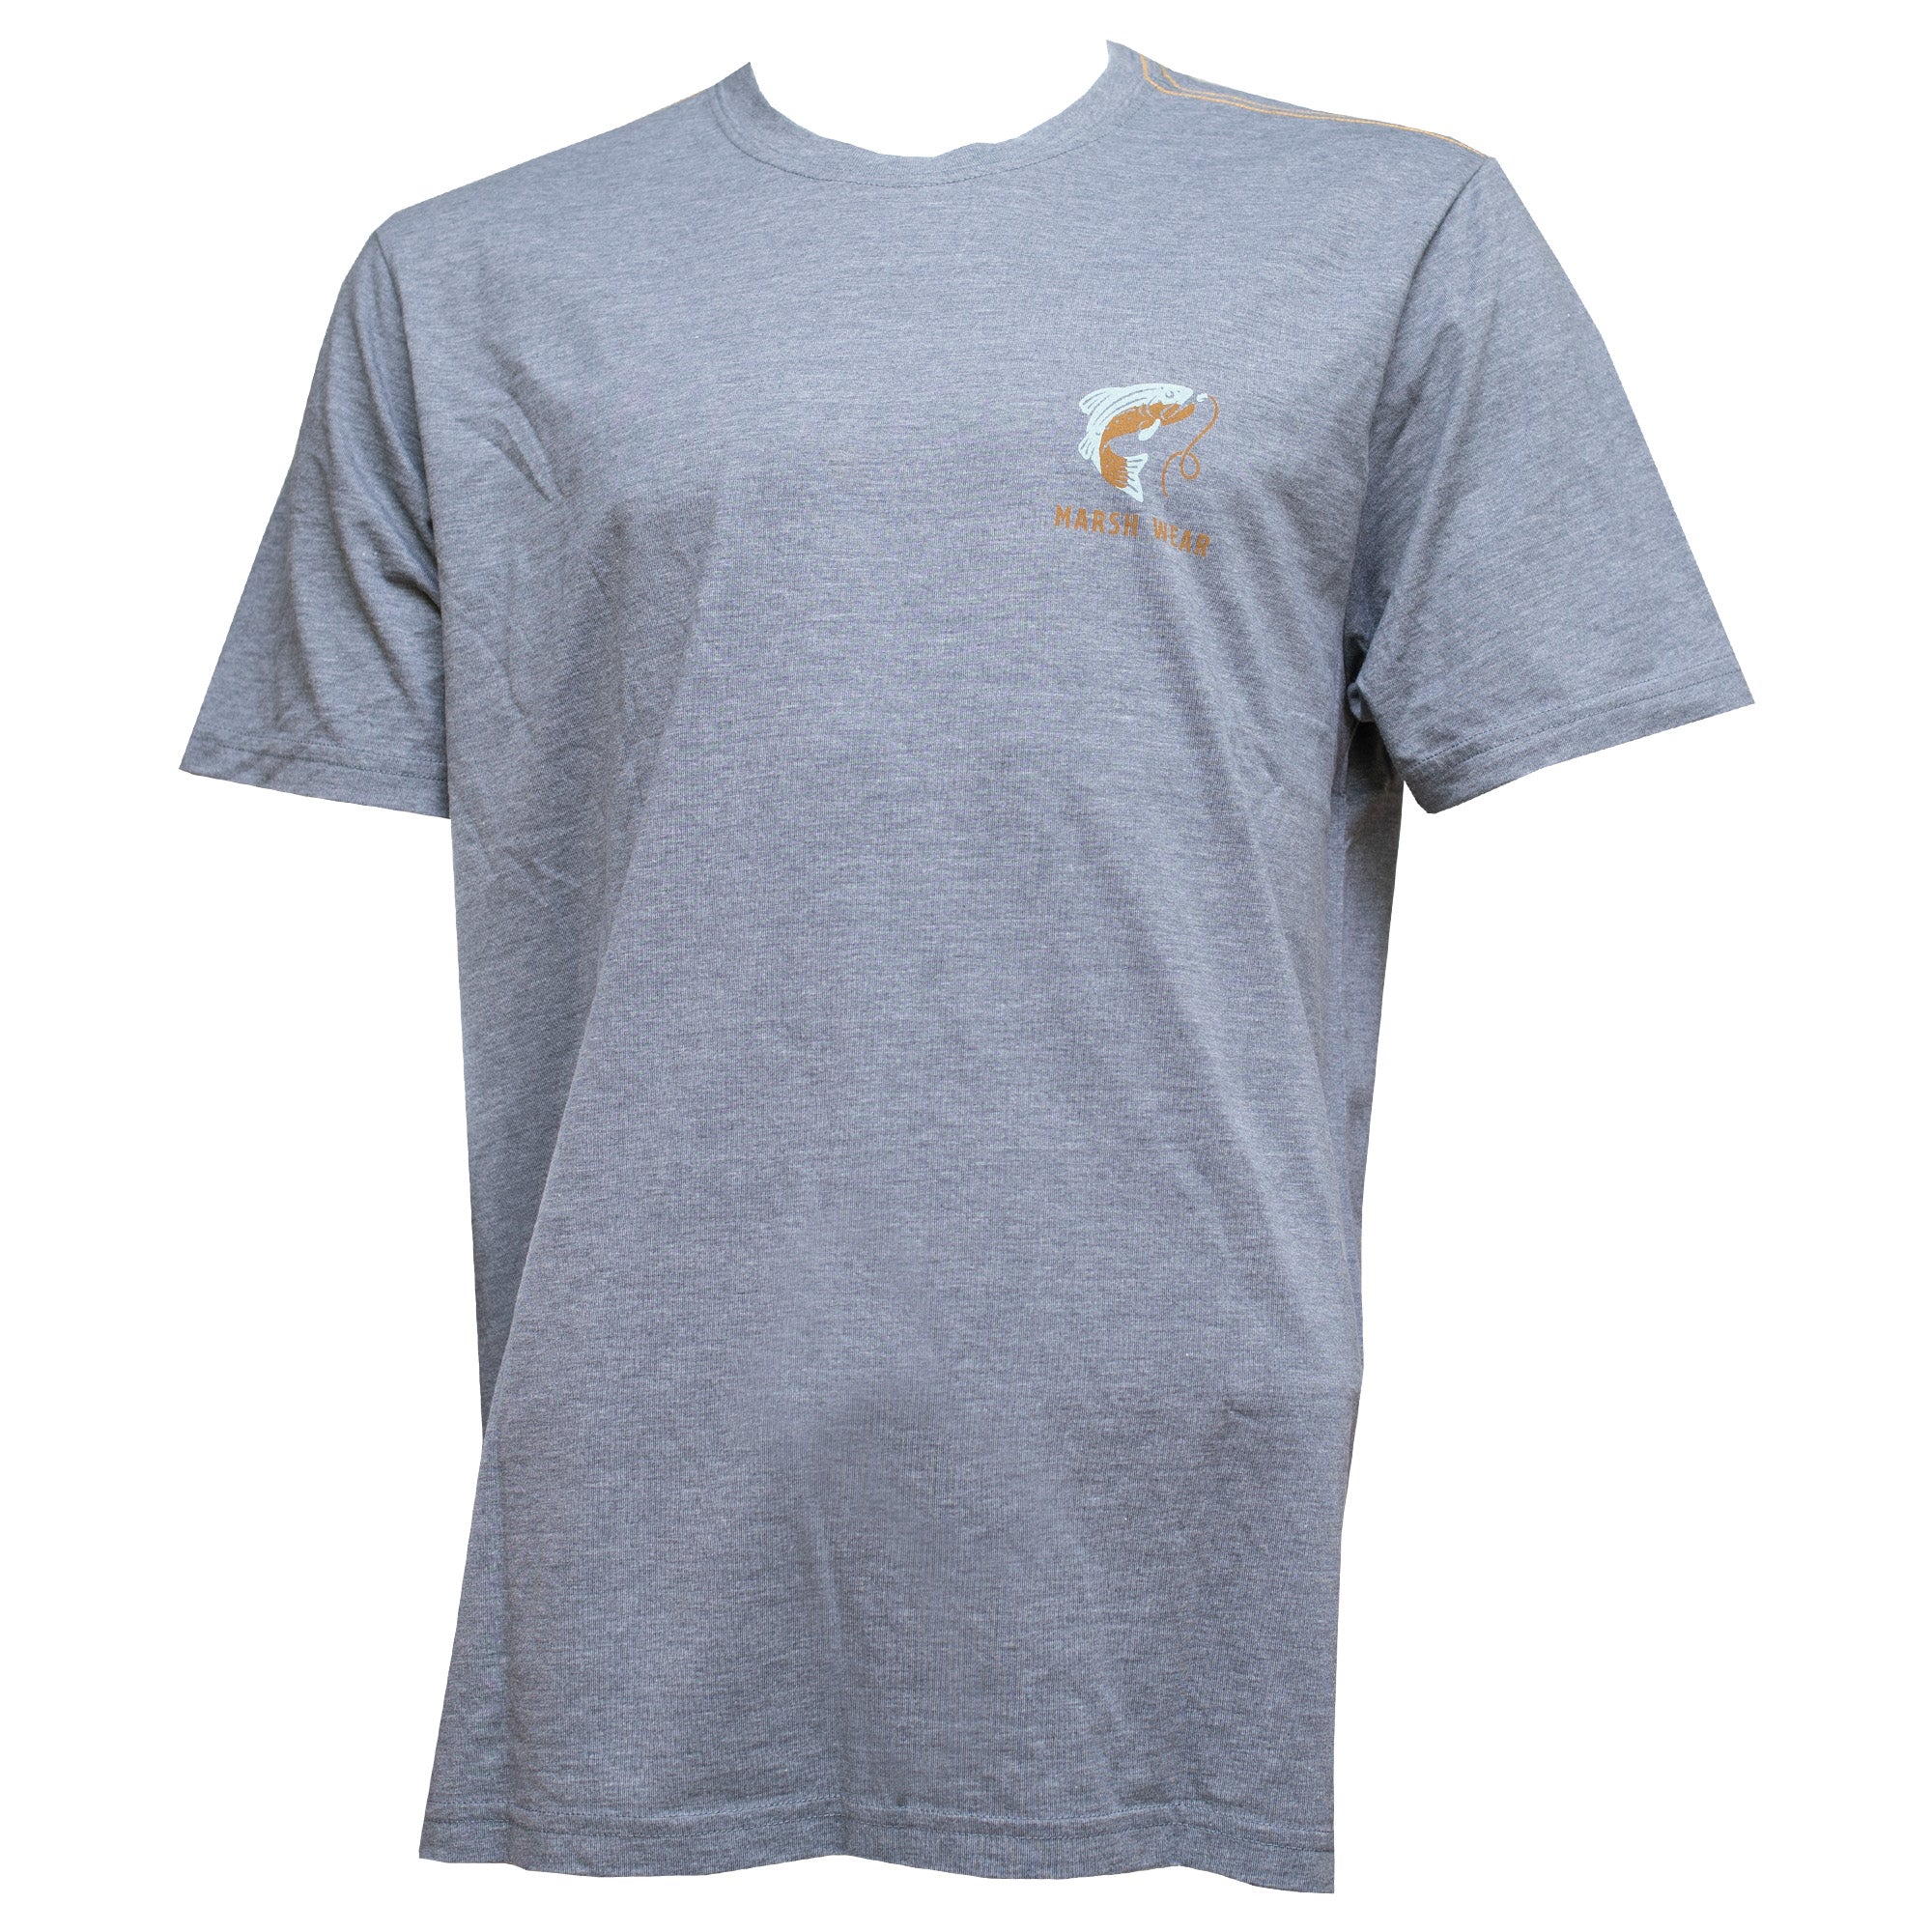 Marsh Wear Fly Men's S/S T-Shirt